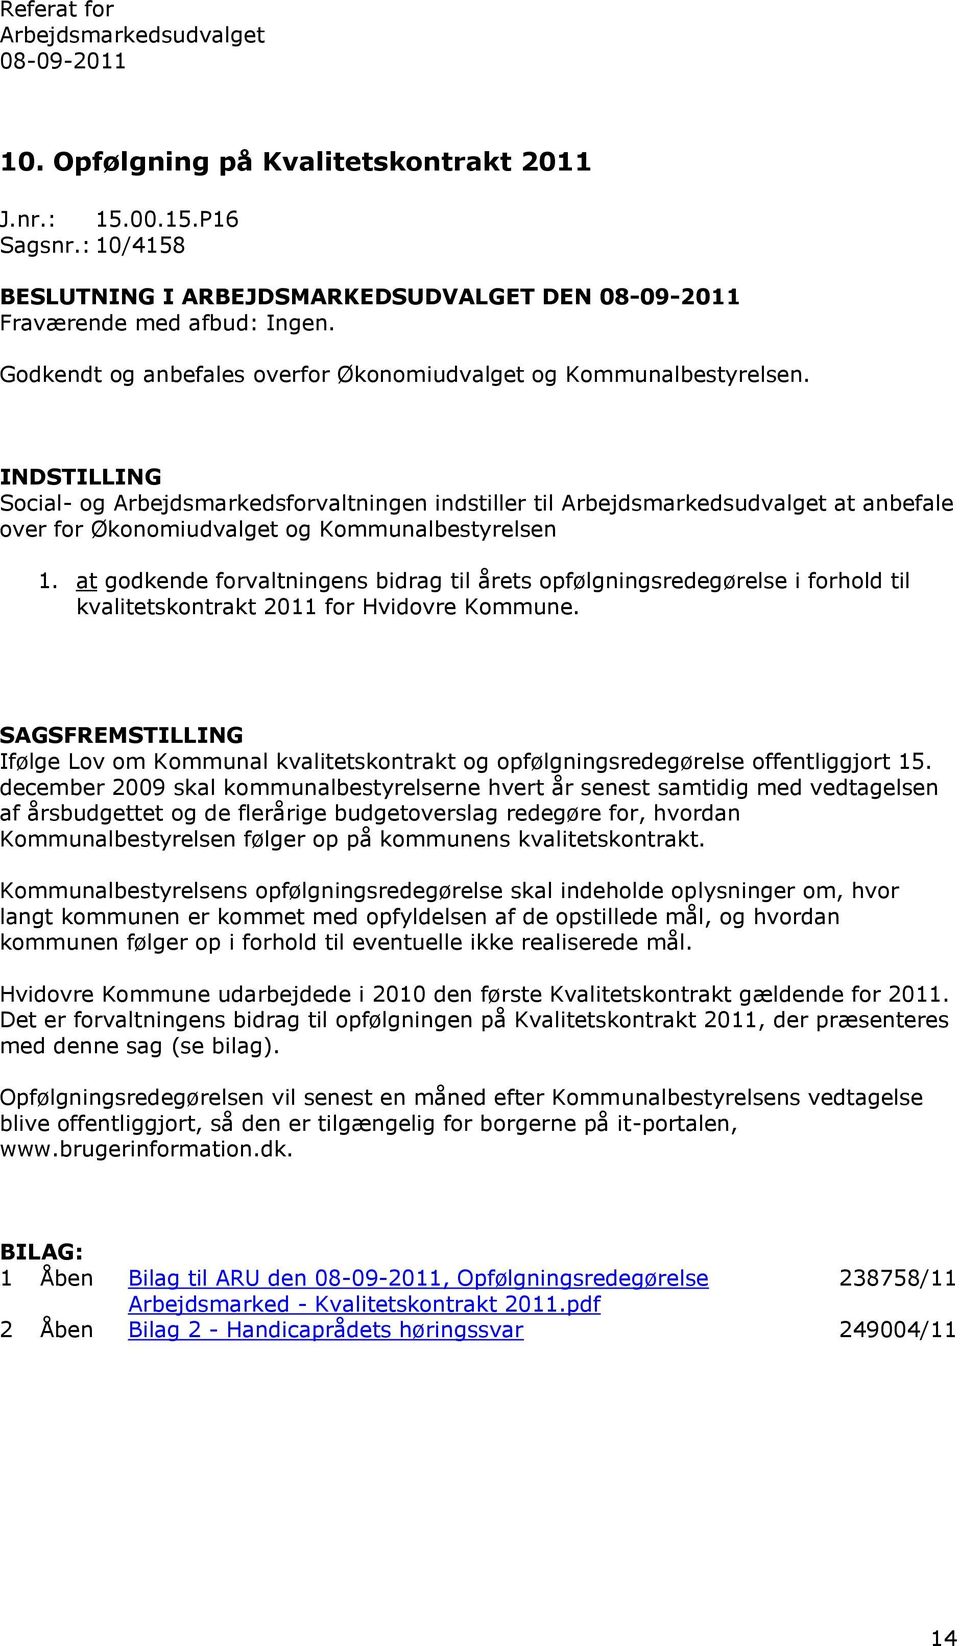 at godkende forvaltningens bidrag til årets opfølgningsredegørelse i forhold til kvalitetskontrakt 2011 for Hvidovre Kommune.